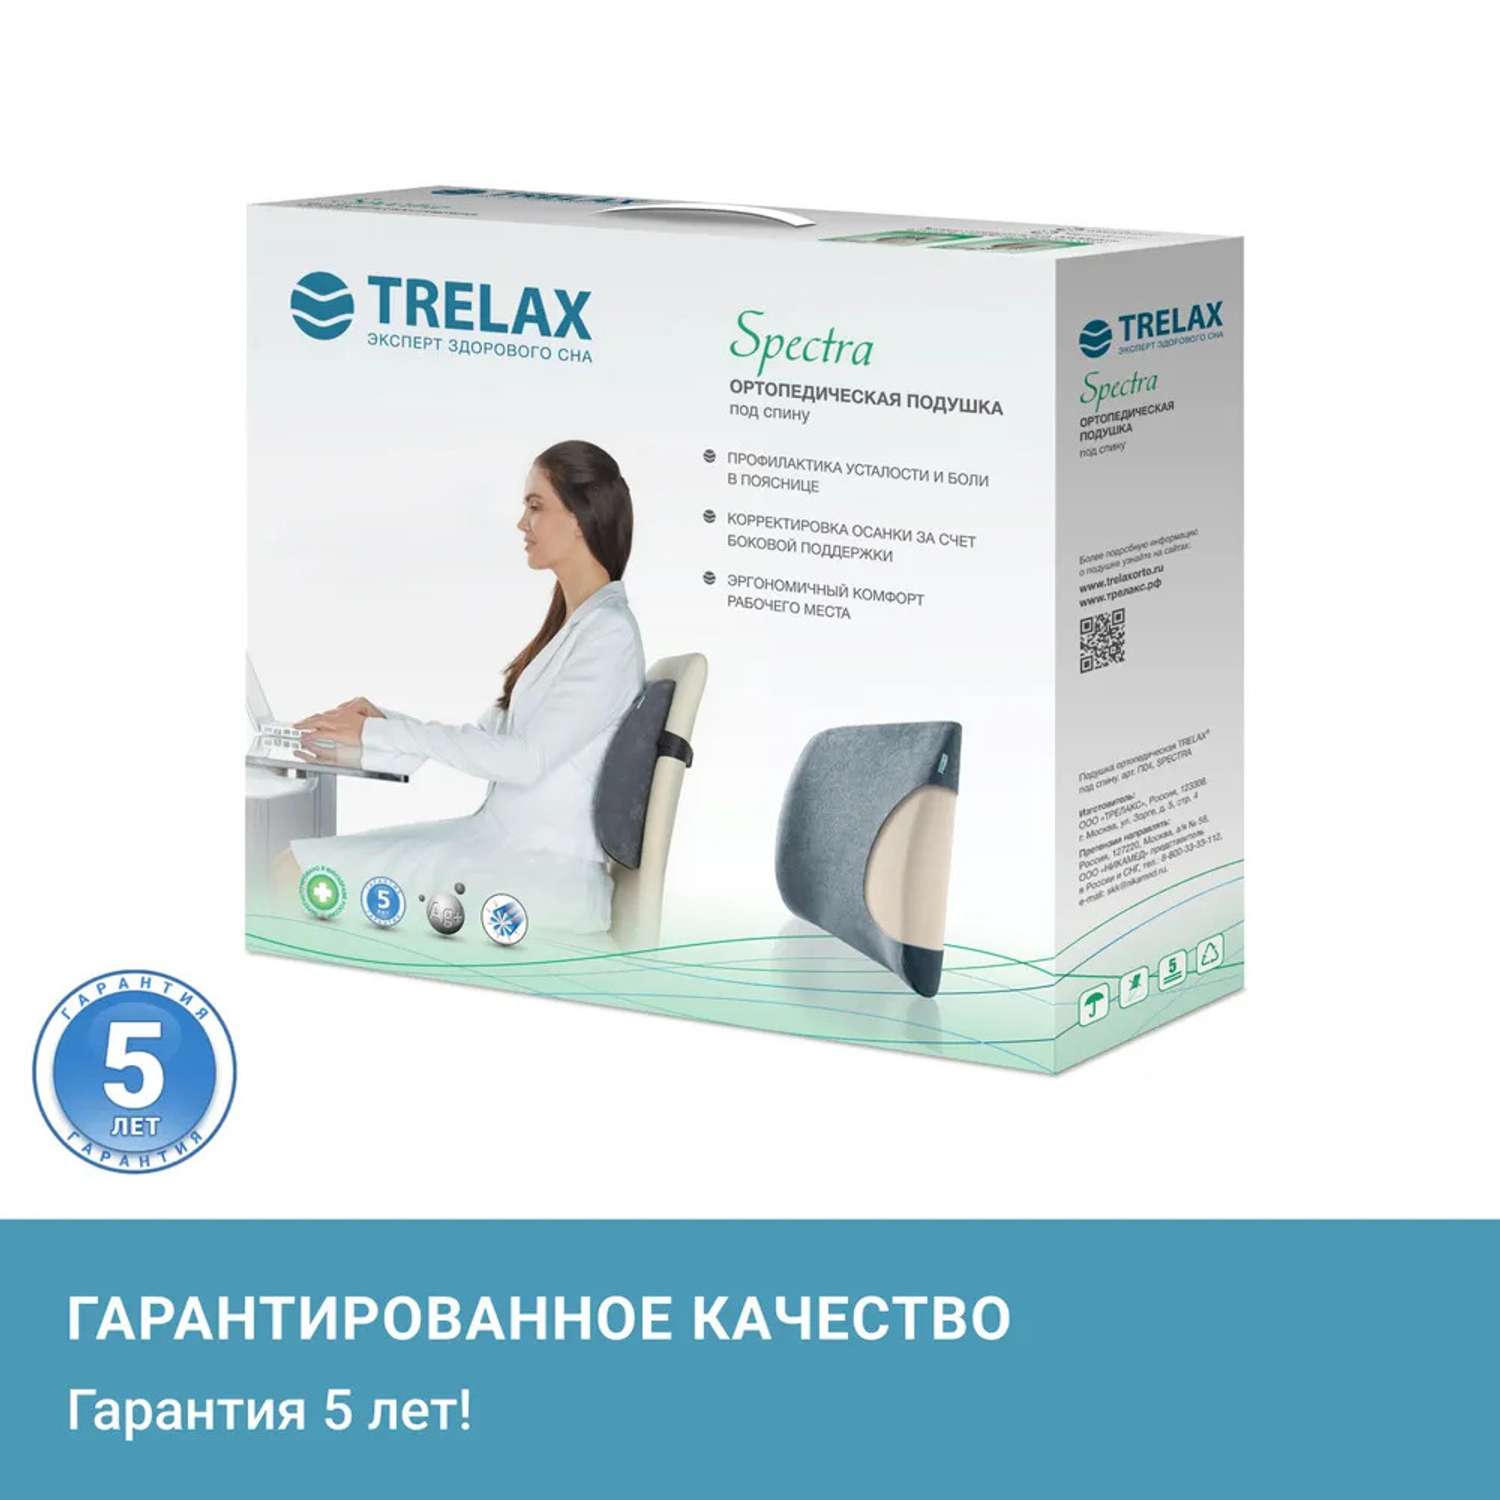 Ортопедическая подушка TRELAX для спины - фото 10